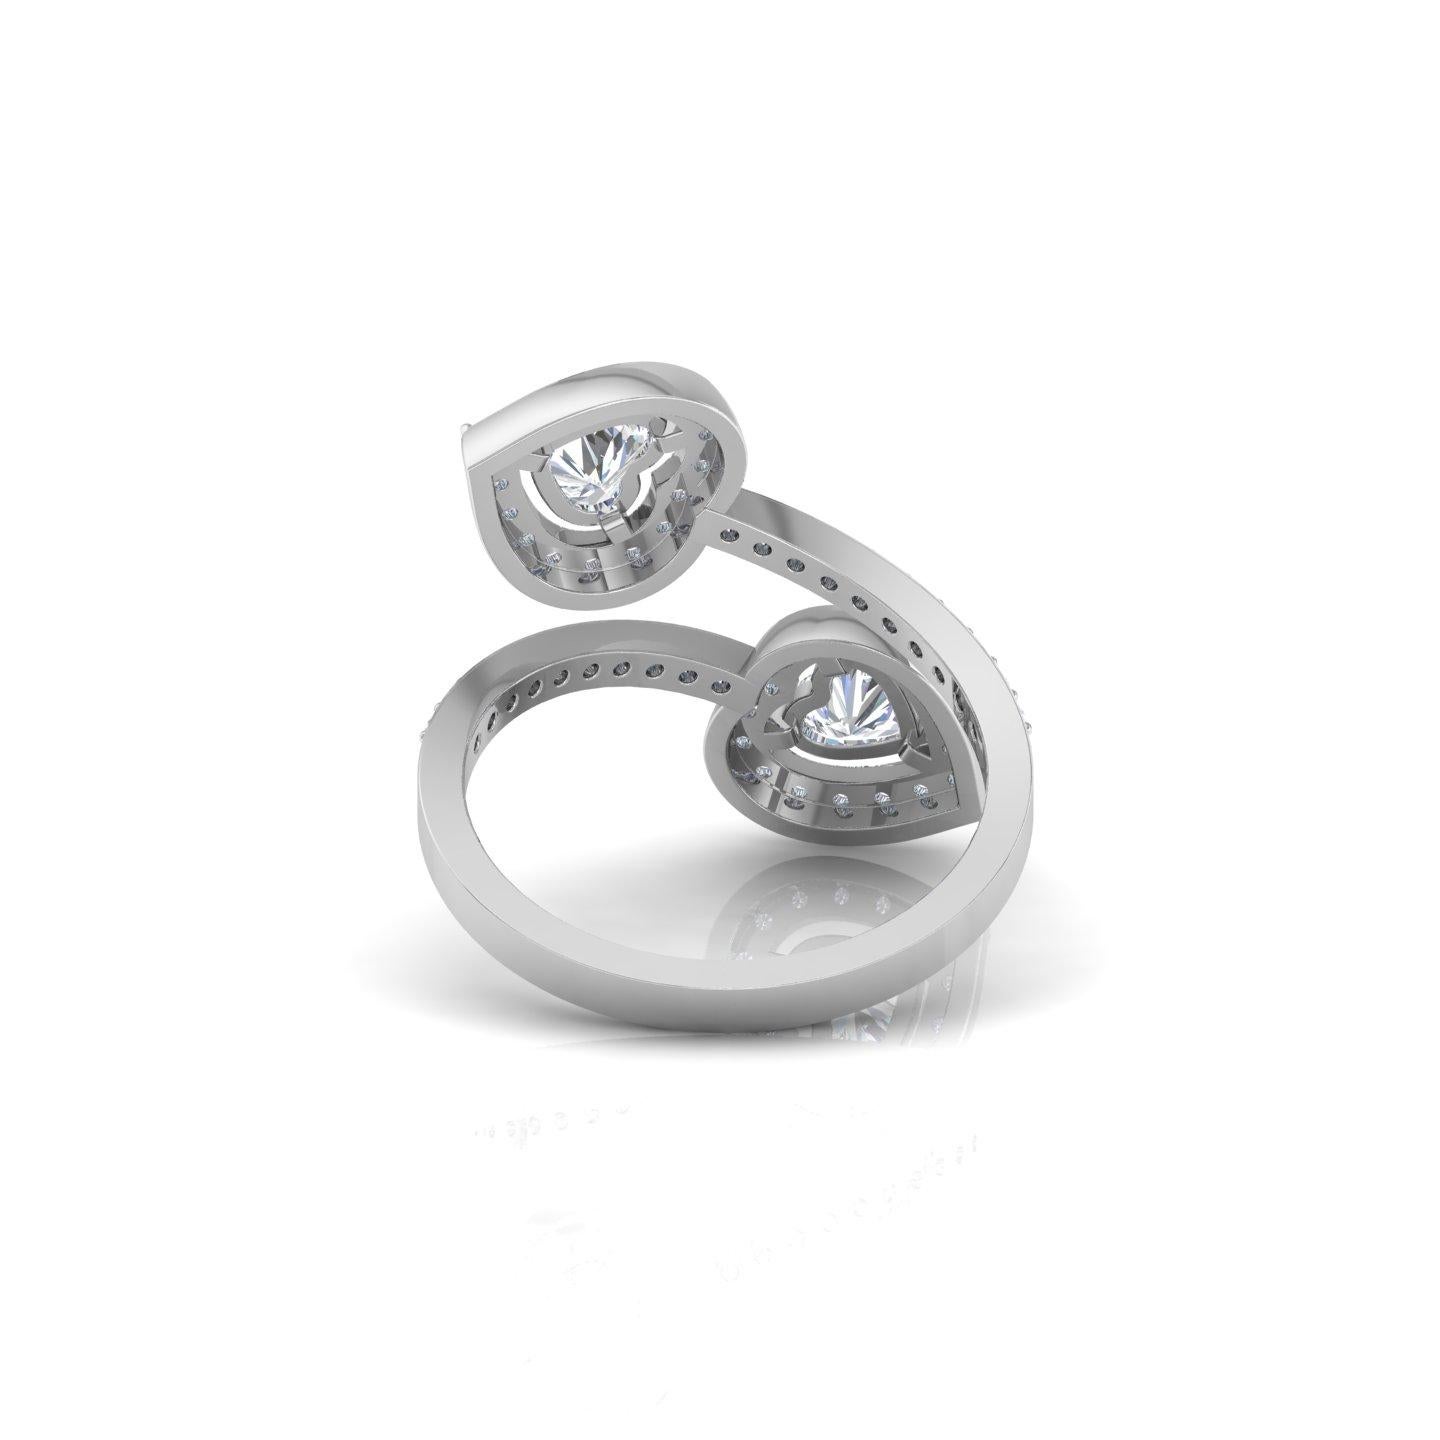 Lassen Sie sich von der zeitlosen Eleganz unseres exquisiten Herz-Diamantrings verzaubern, der in sorgfältiger Handarbeit gefertigt wurde, um Herzen zu erobern und mit seiner fesselnden Schönheit zu blenden. Dieser Ring ist in 10k/14k/18k, Rose